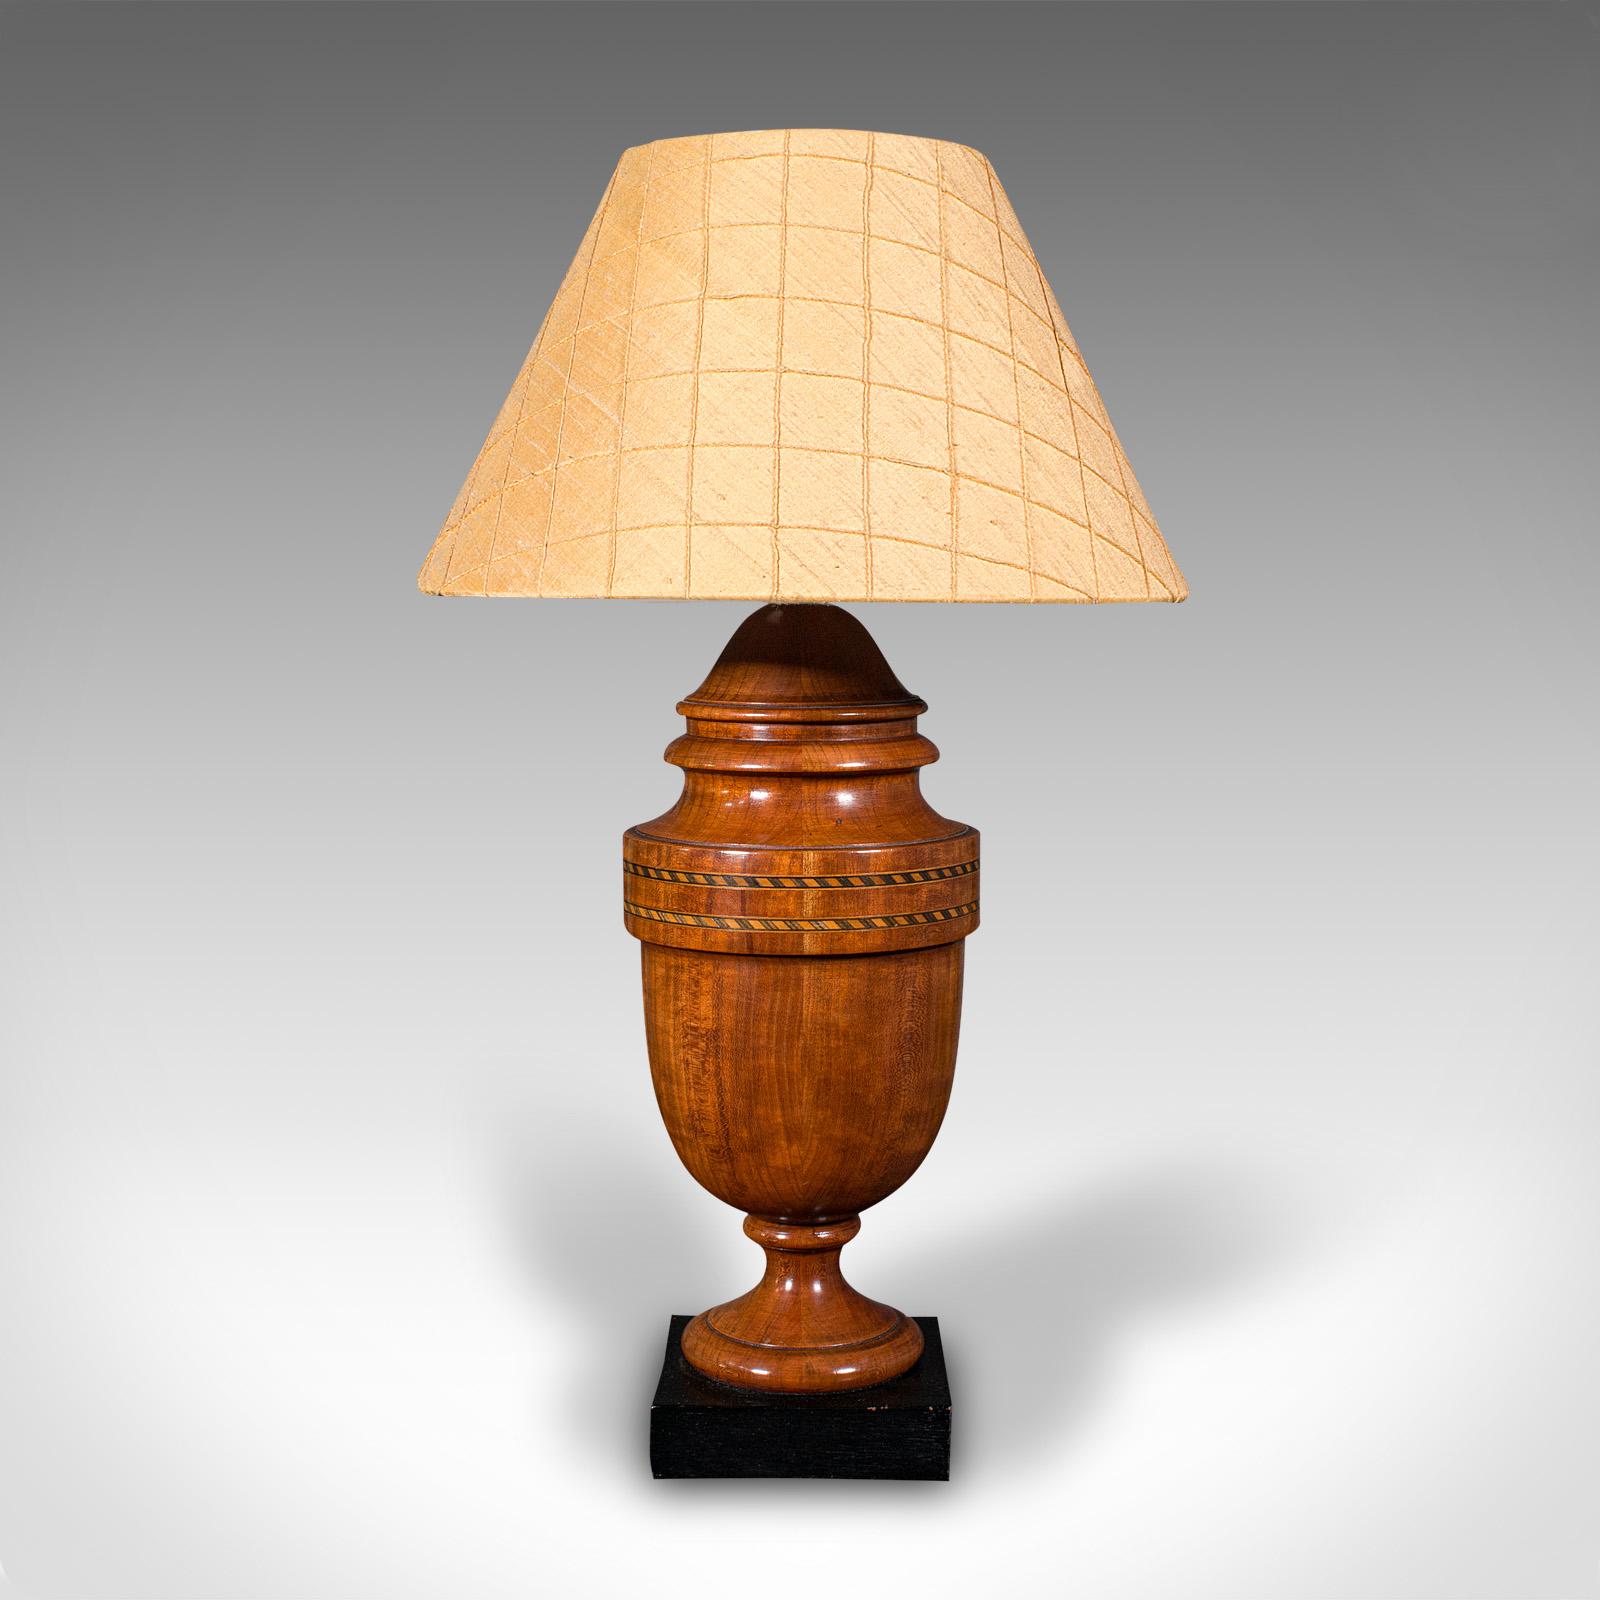 British Vintage Table Lamp, English, Turned Walnut, Boxwood, Side Light, Mid Century